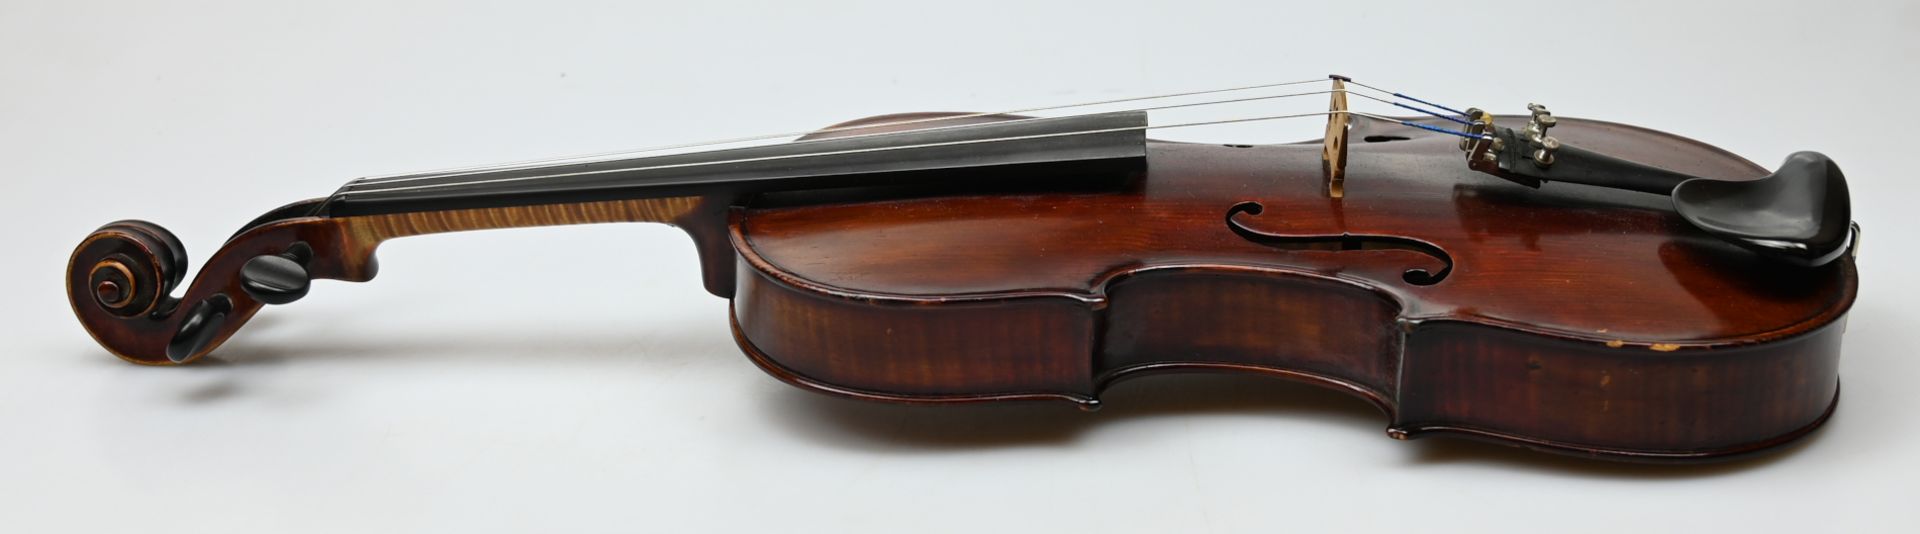 1 Geige innwandig auf Klebezettel bez. "Joseph Anton HAFF, Augsburg 1892" - Image 3 of 3